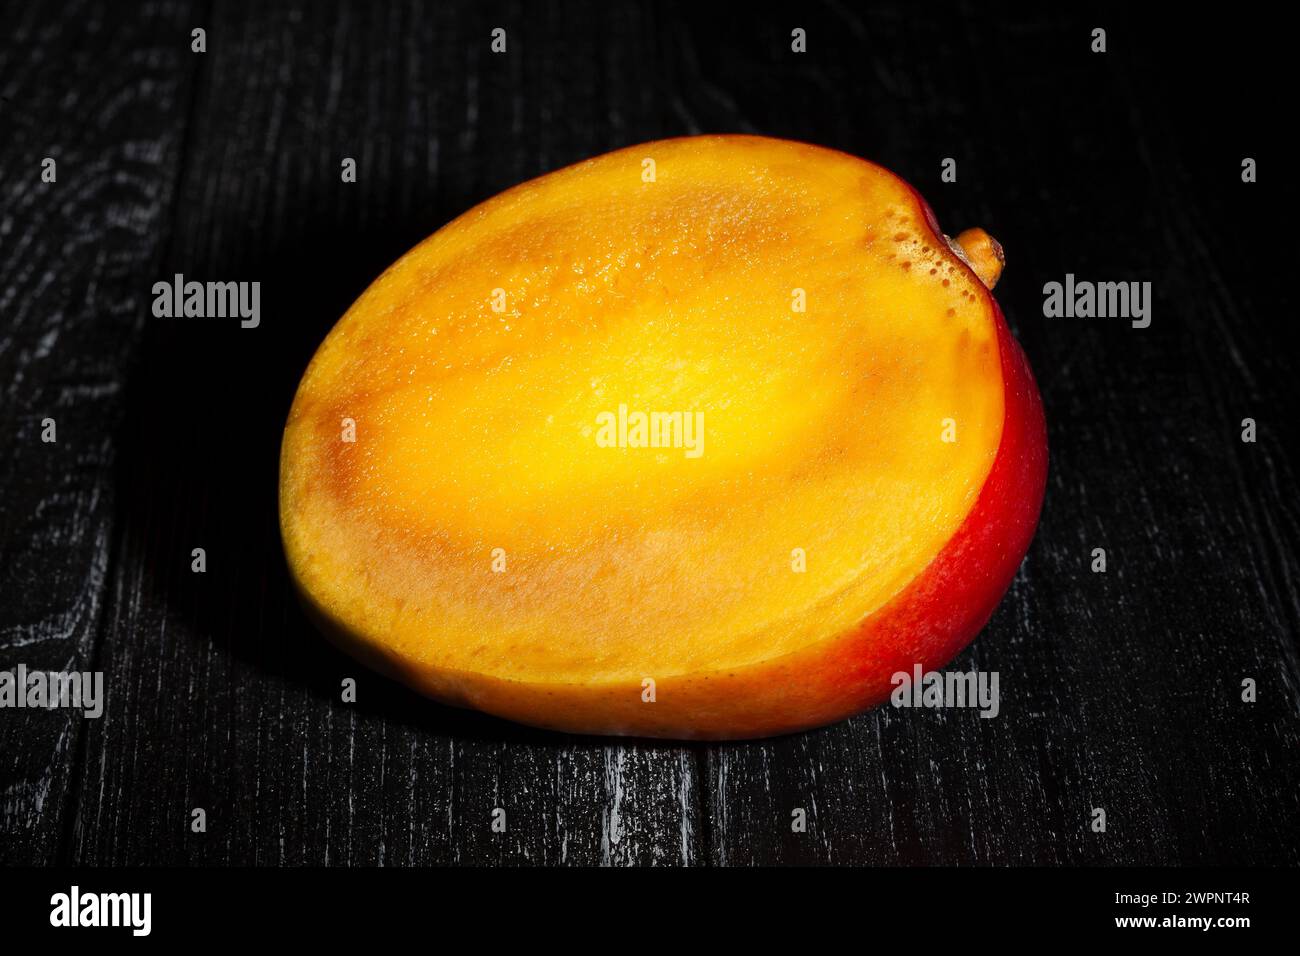 sliced mango on black wood background Stock Photo